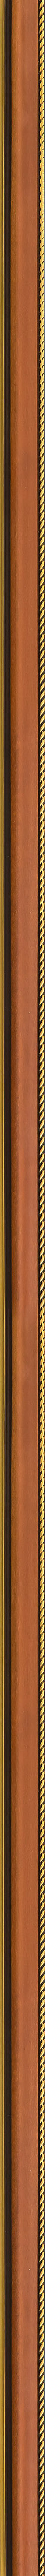 Καρυδί κορνίζα με χρυσή πλεξούδα frame